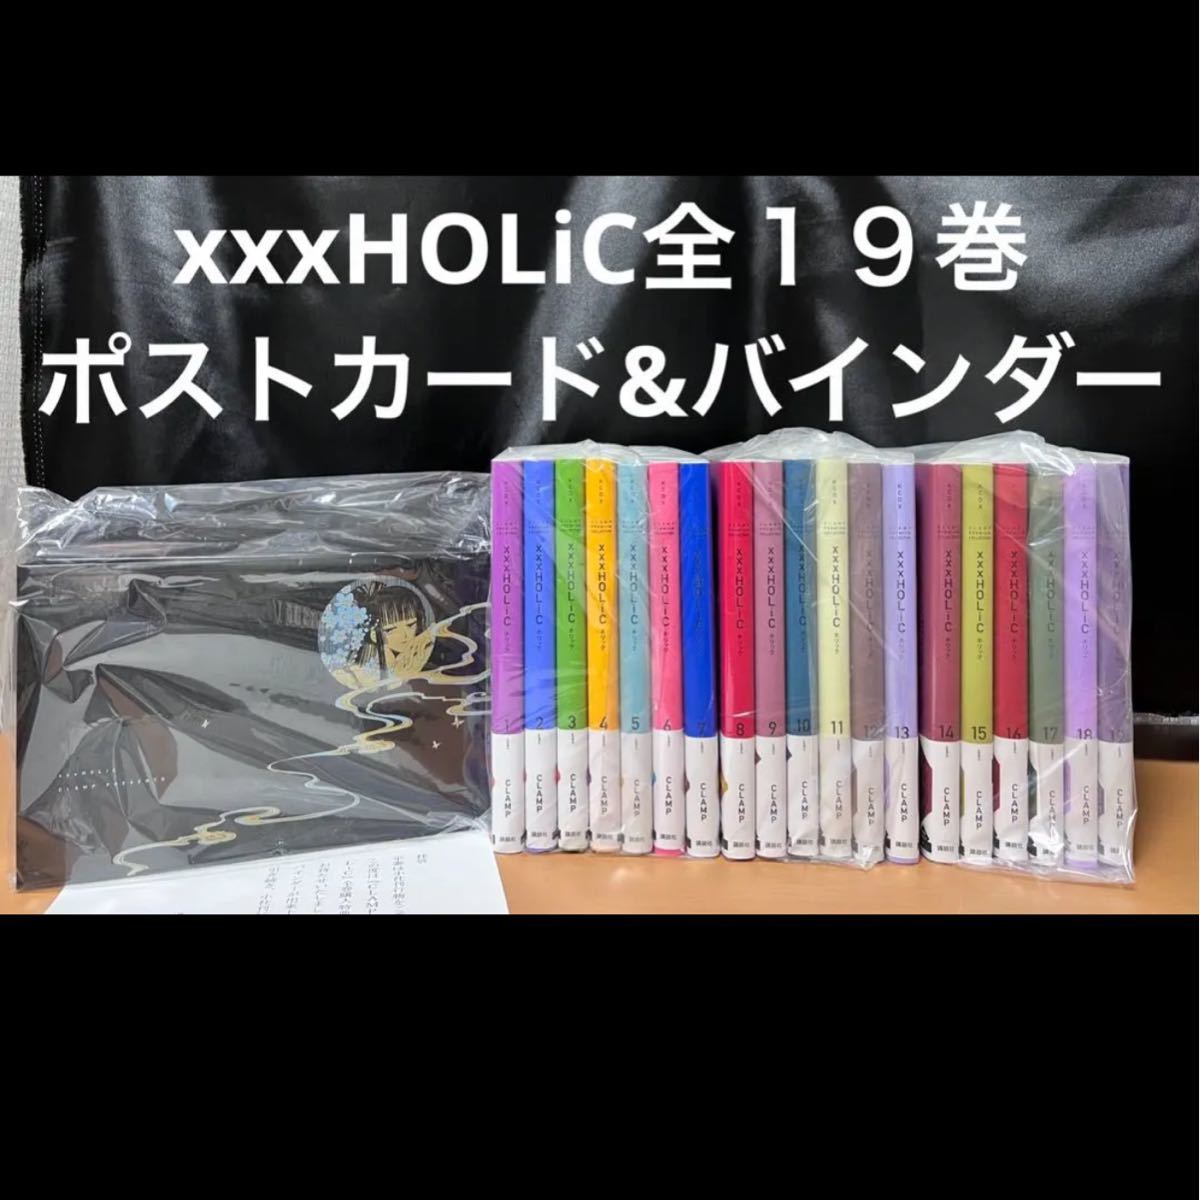 ホリック xxxholic 全巻 新装版 1〜19巻 セット ポストカード